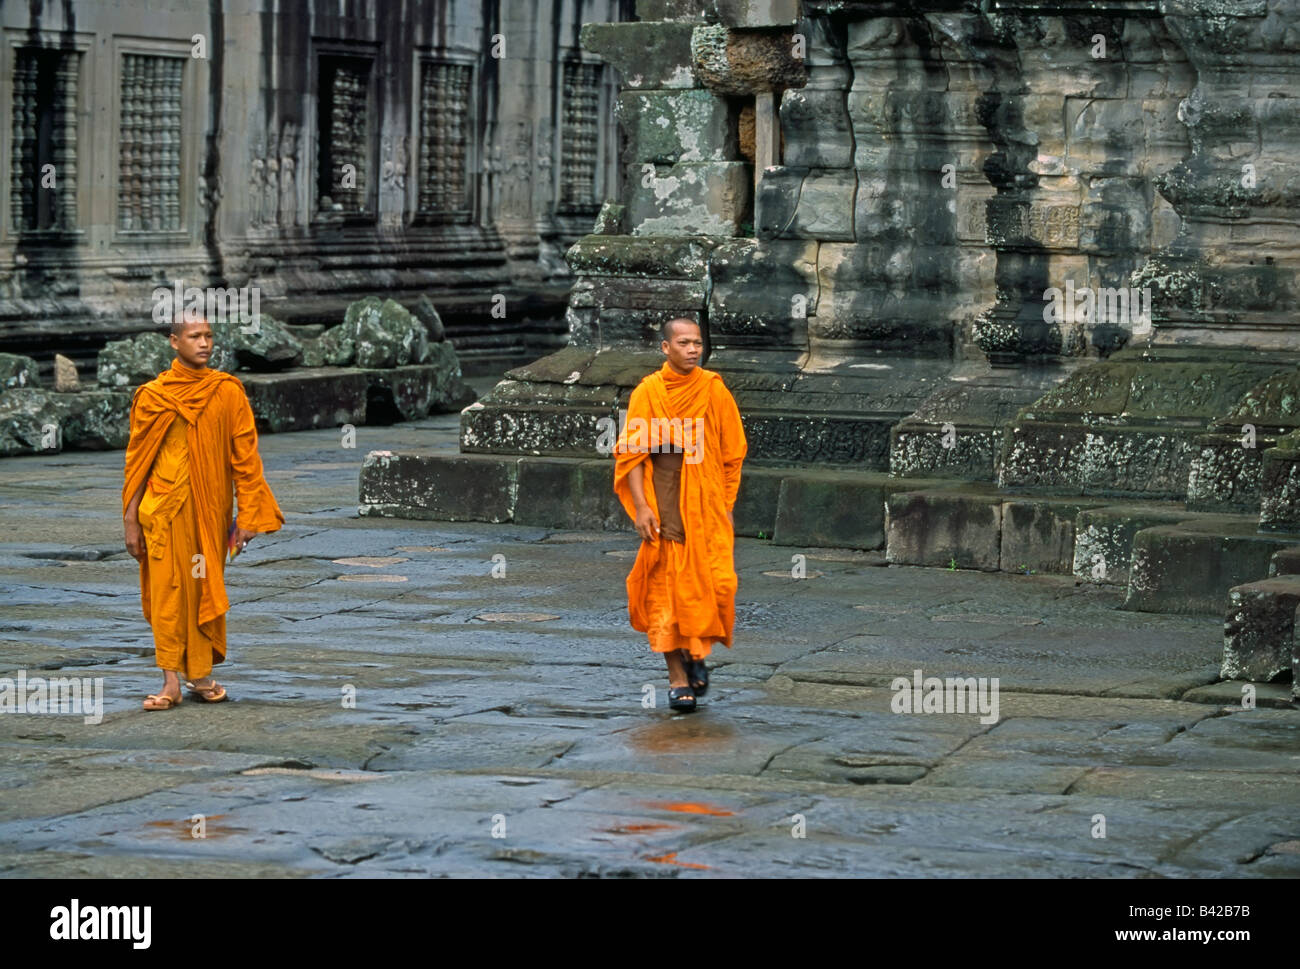 Le Cambodge, la Province de Siem Reap, Angkor Wat, moines marche à travers les ruines antiques Banque D'Images